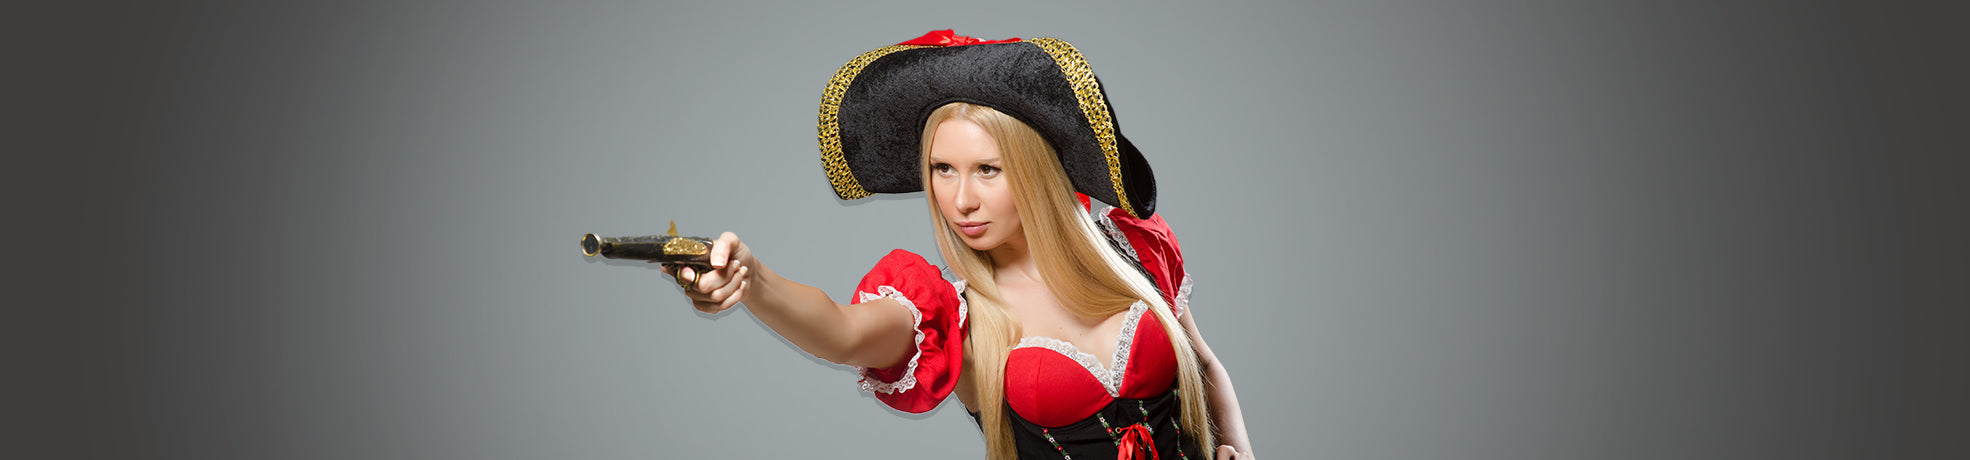 Ladies Pirate Costumes